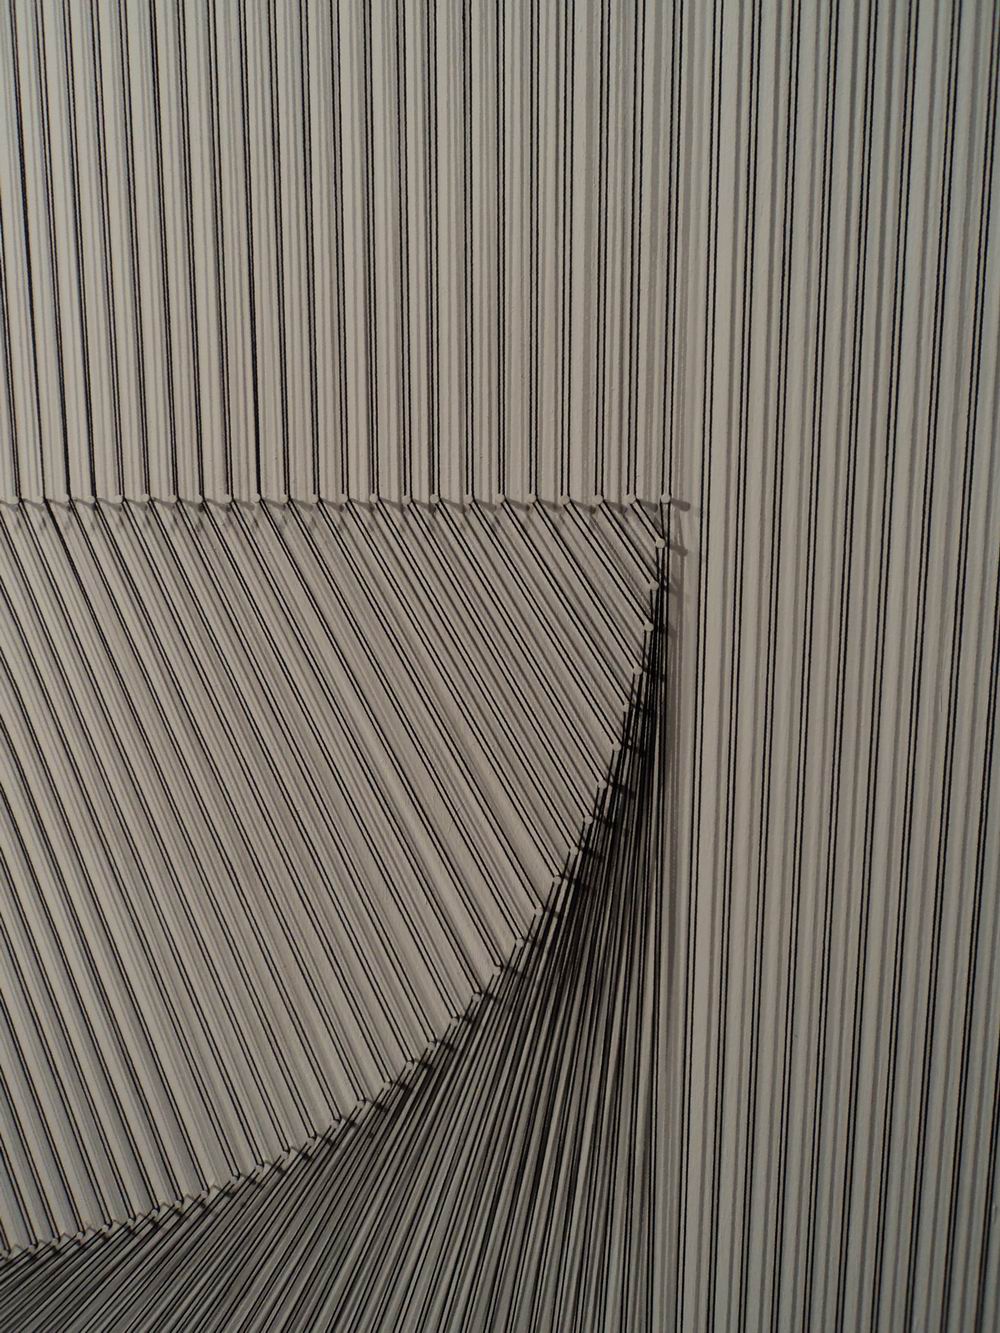 Twist, 1995, Silk, 273 x 127 cm, Don Samirō Yunoki, 2013 - MA 12577, © Paris, RMN - Grand Palais (Musée Guimet, Paris) / Thierry Ollivier